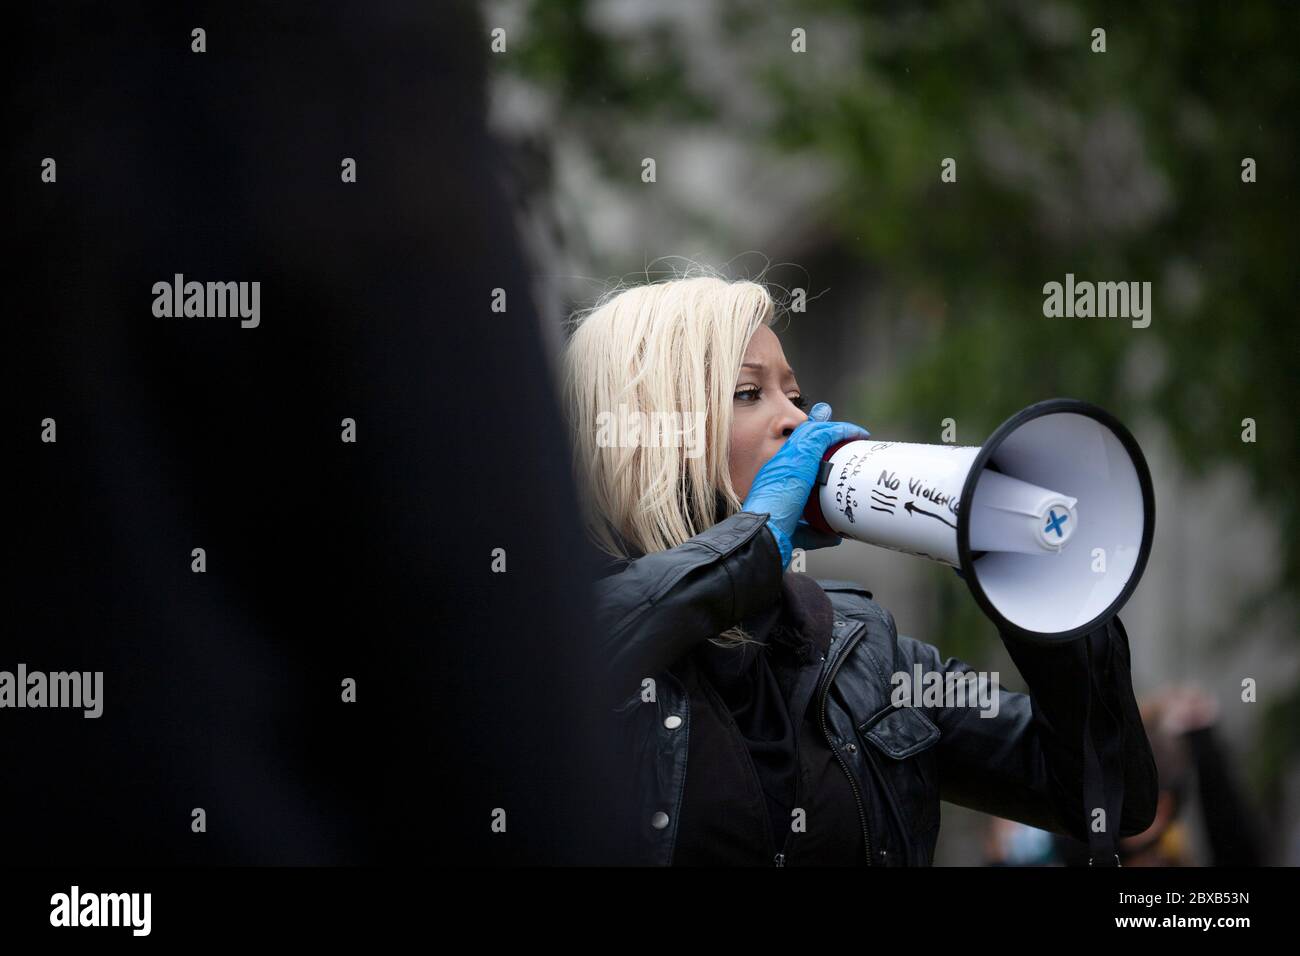 L'actrice Imarn Ayton, en parlant d'utiliser une tannoy, haut-parleur à la Black Lives Matter UK protestation sur la place du Parlement. Londres Angleterre Royaume-Uni Banque D'Images